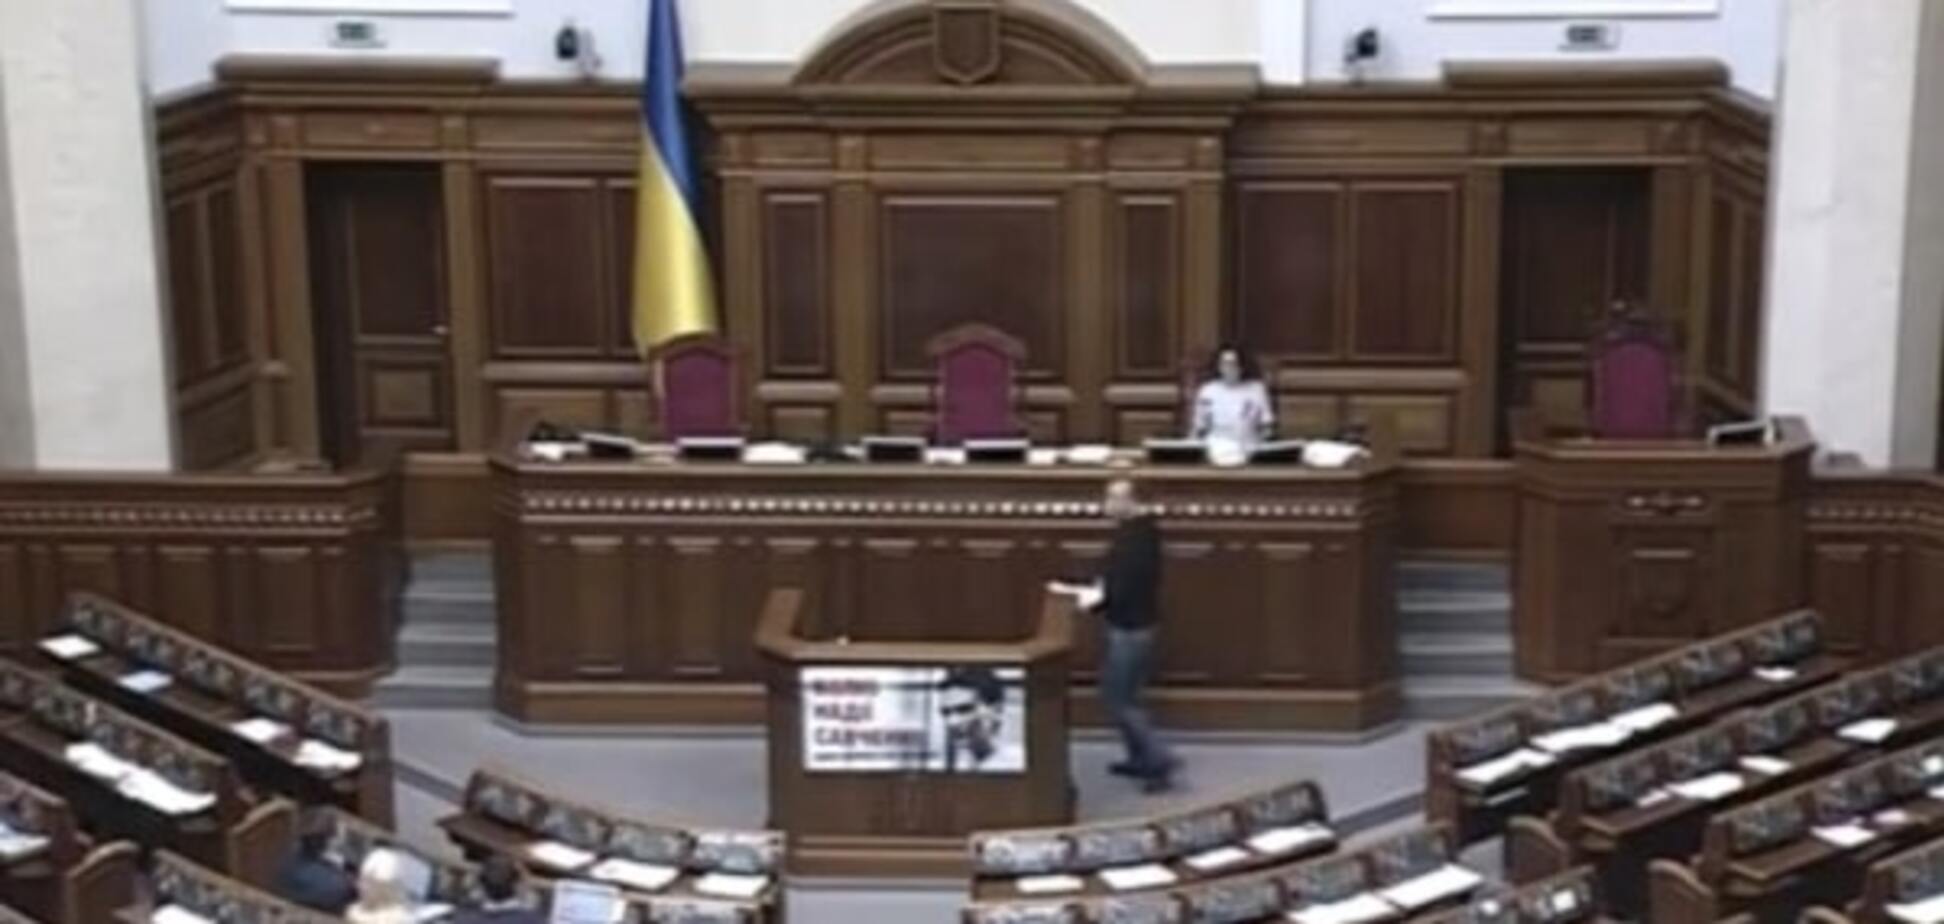 До конца заседания Рады досидели только 8 нардепов: фотофакт